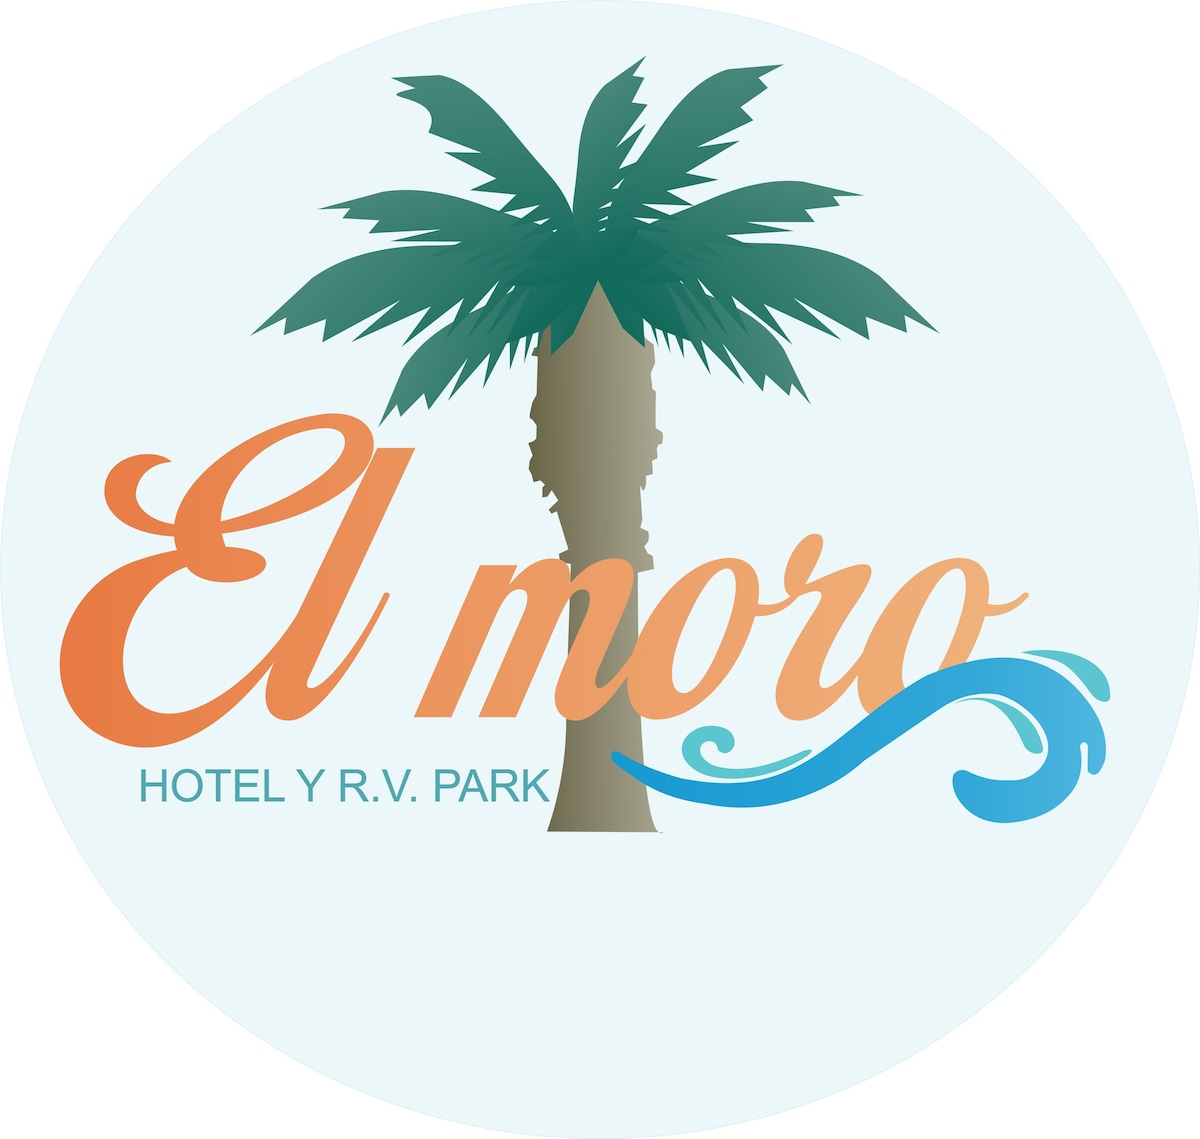 Hotel “El Moro” habitación #8